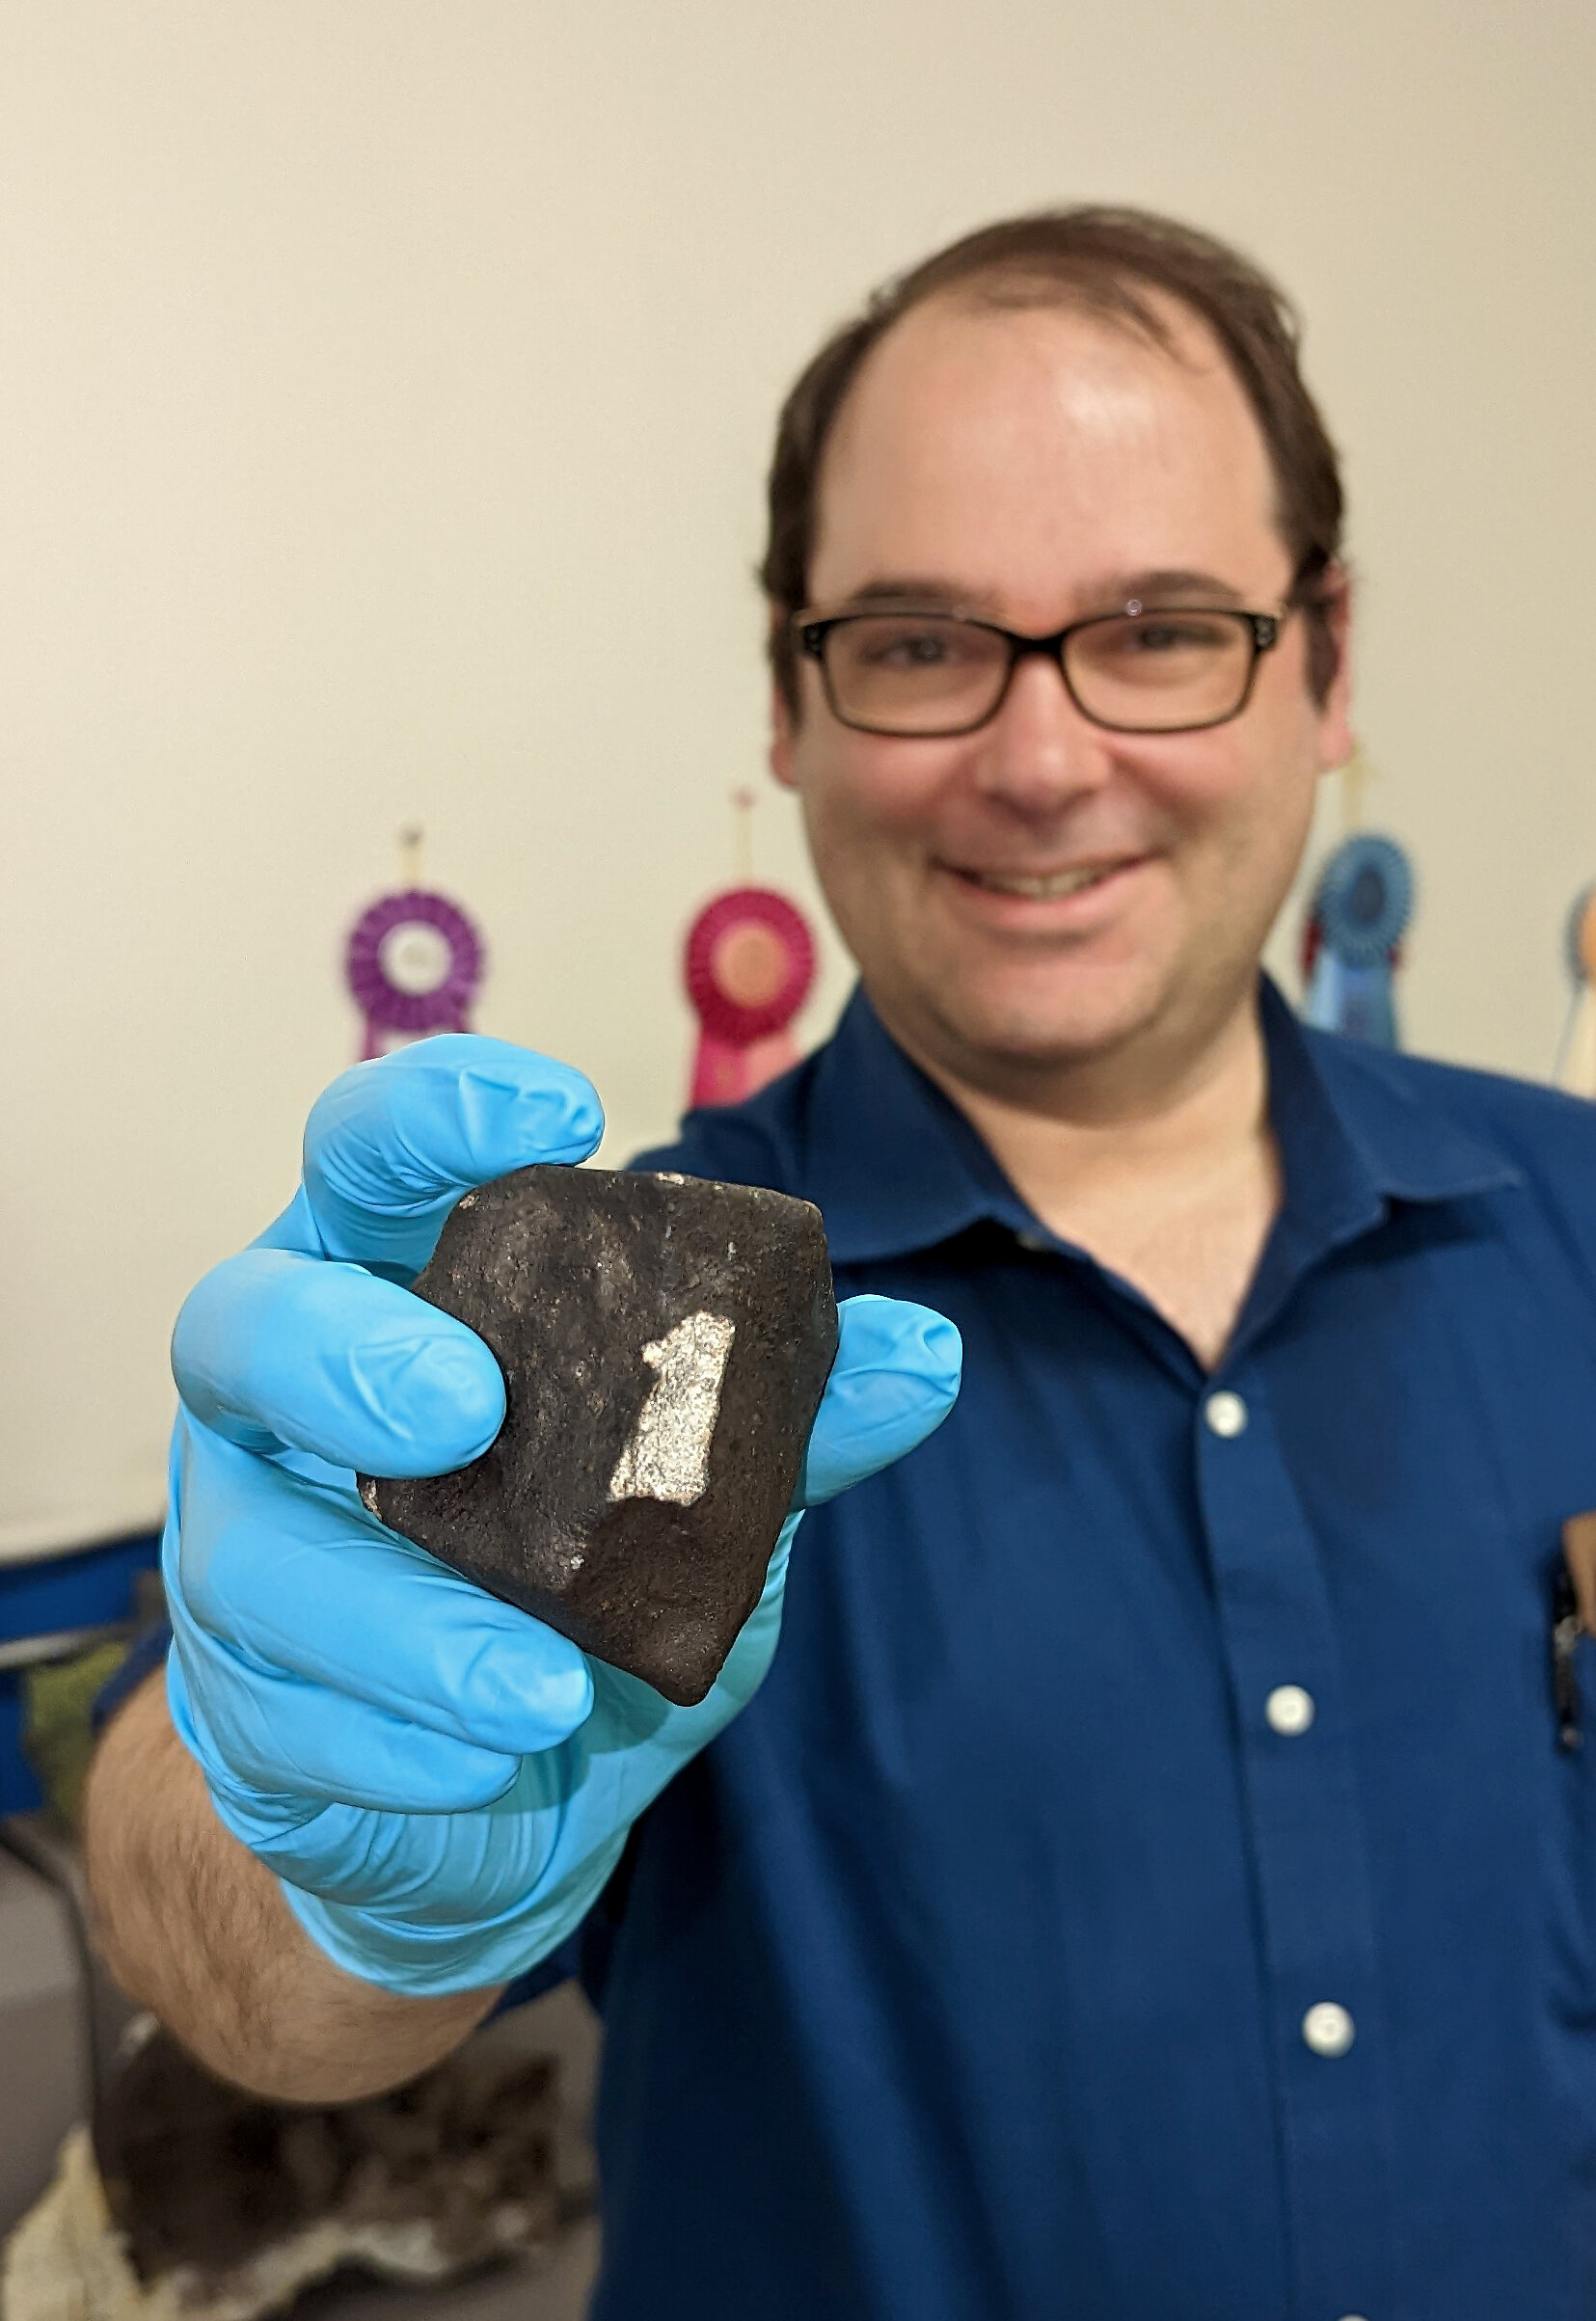 Le musée acquiert une météorite récemment tombée de Junction City, en Géorgie